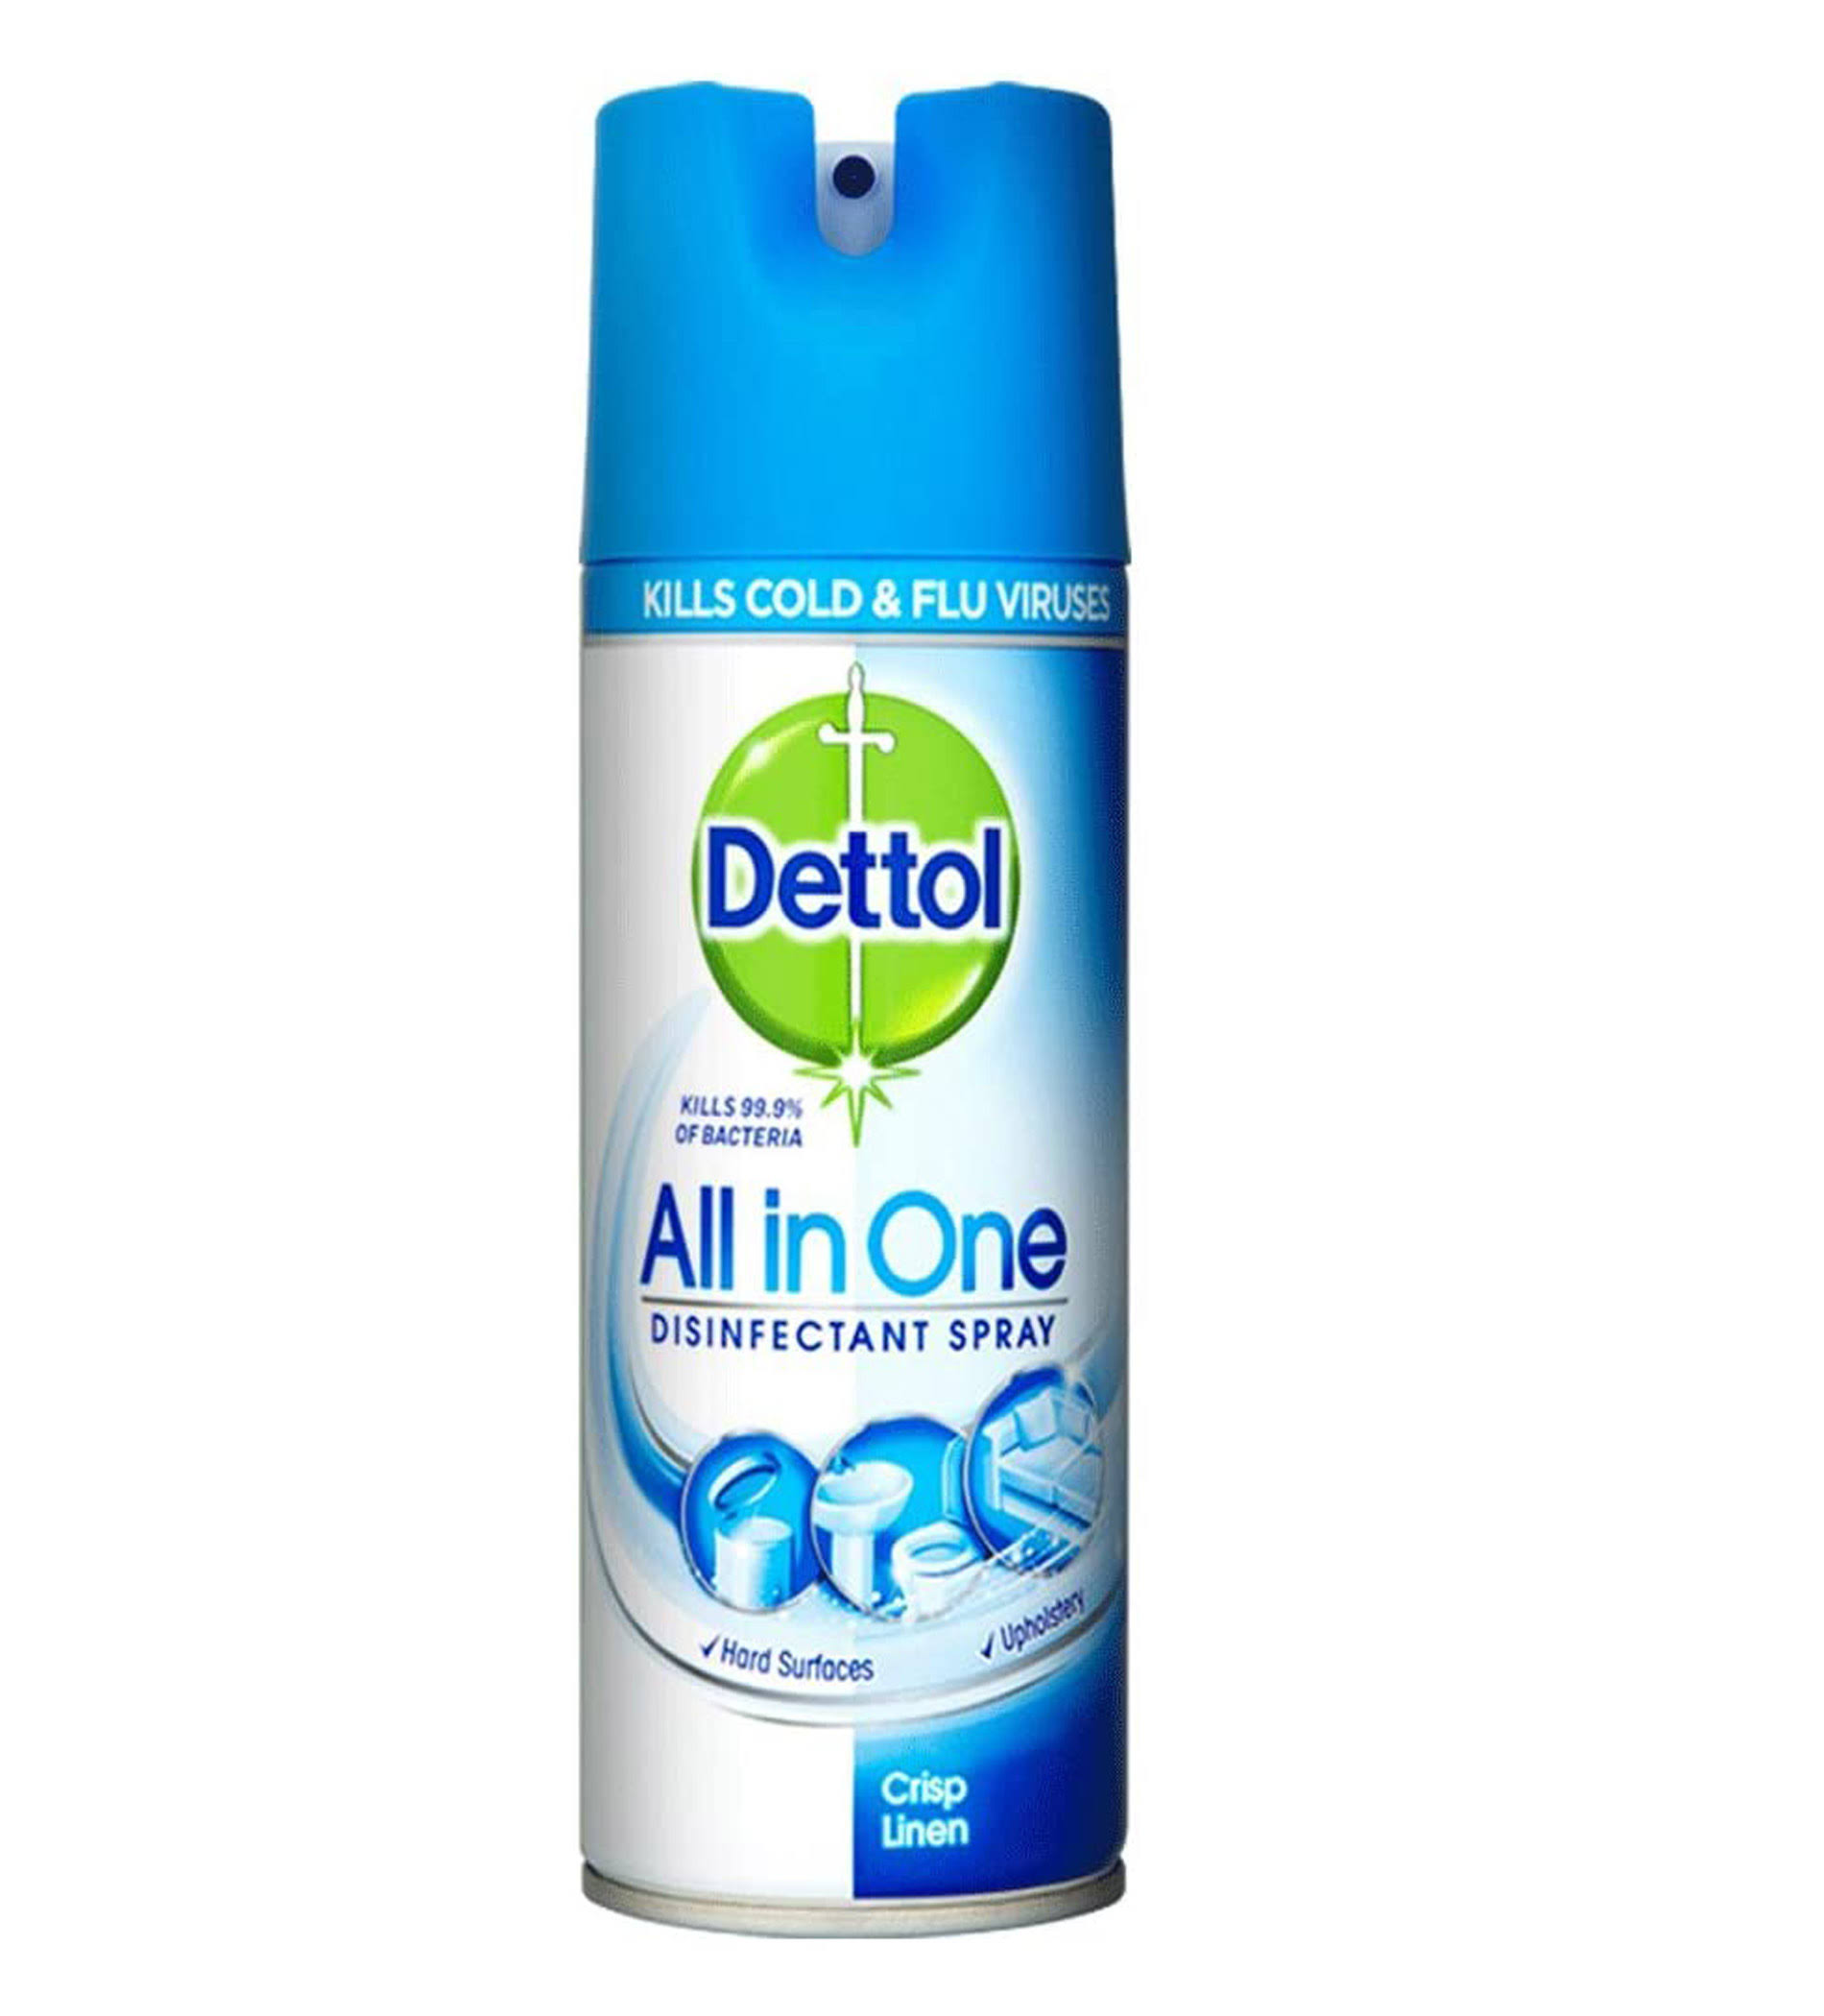 Dettol All in One Crisp Linen Disinfectant Spray - 400 ml